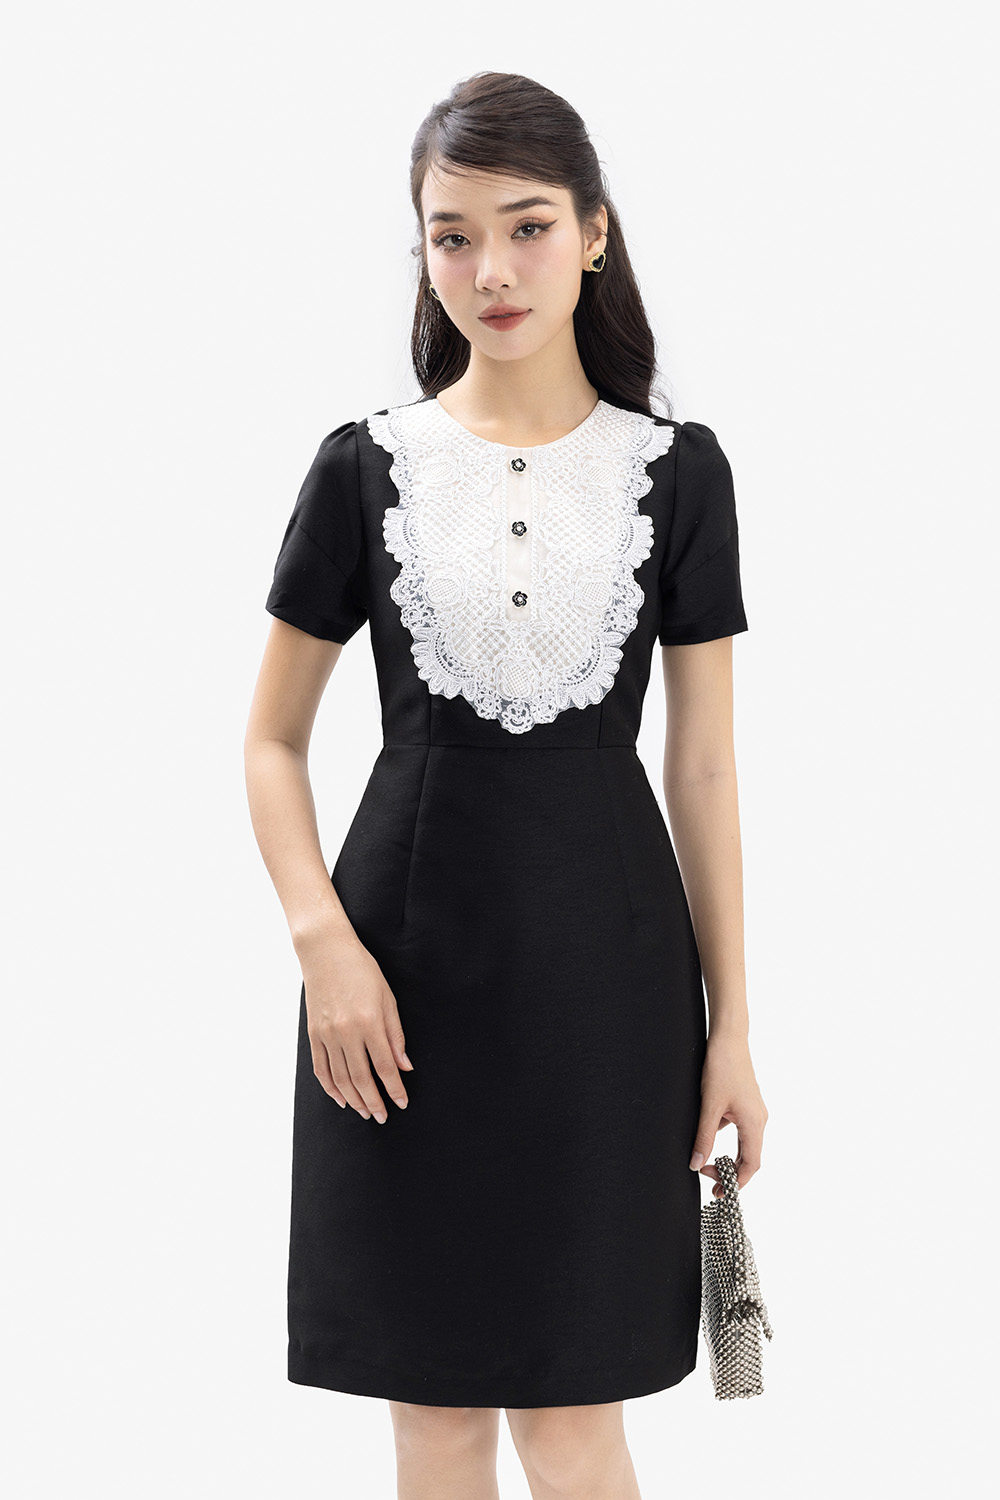 Váy đen phối cổ trắng | Shopee Việt Nam